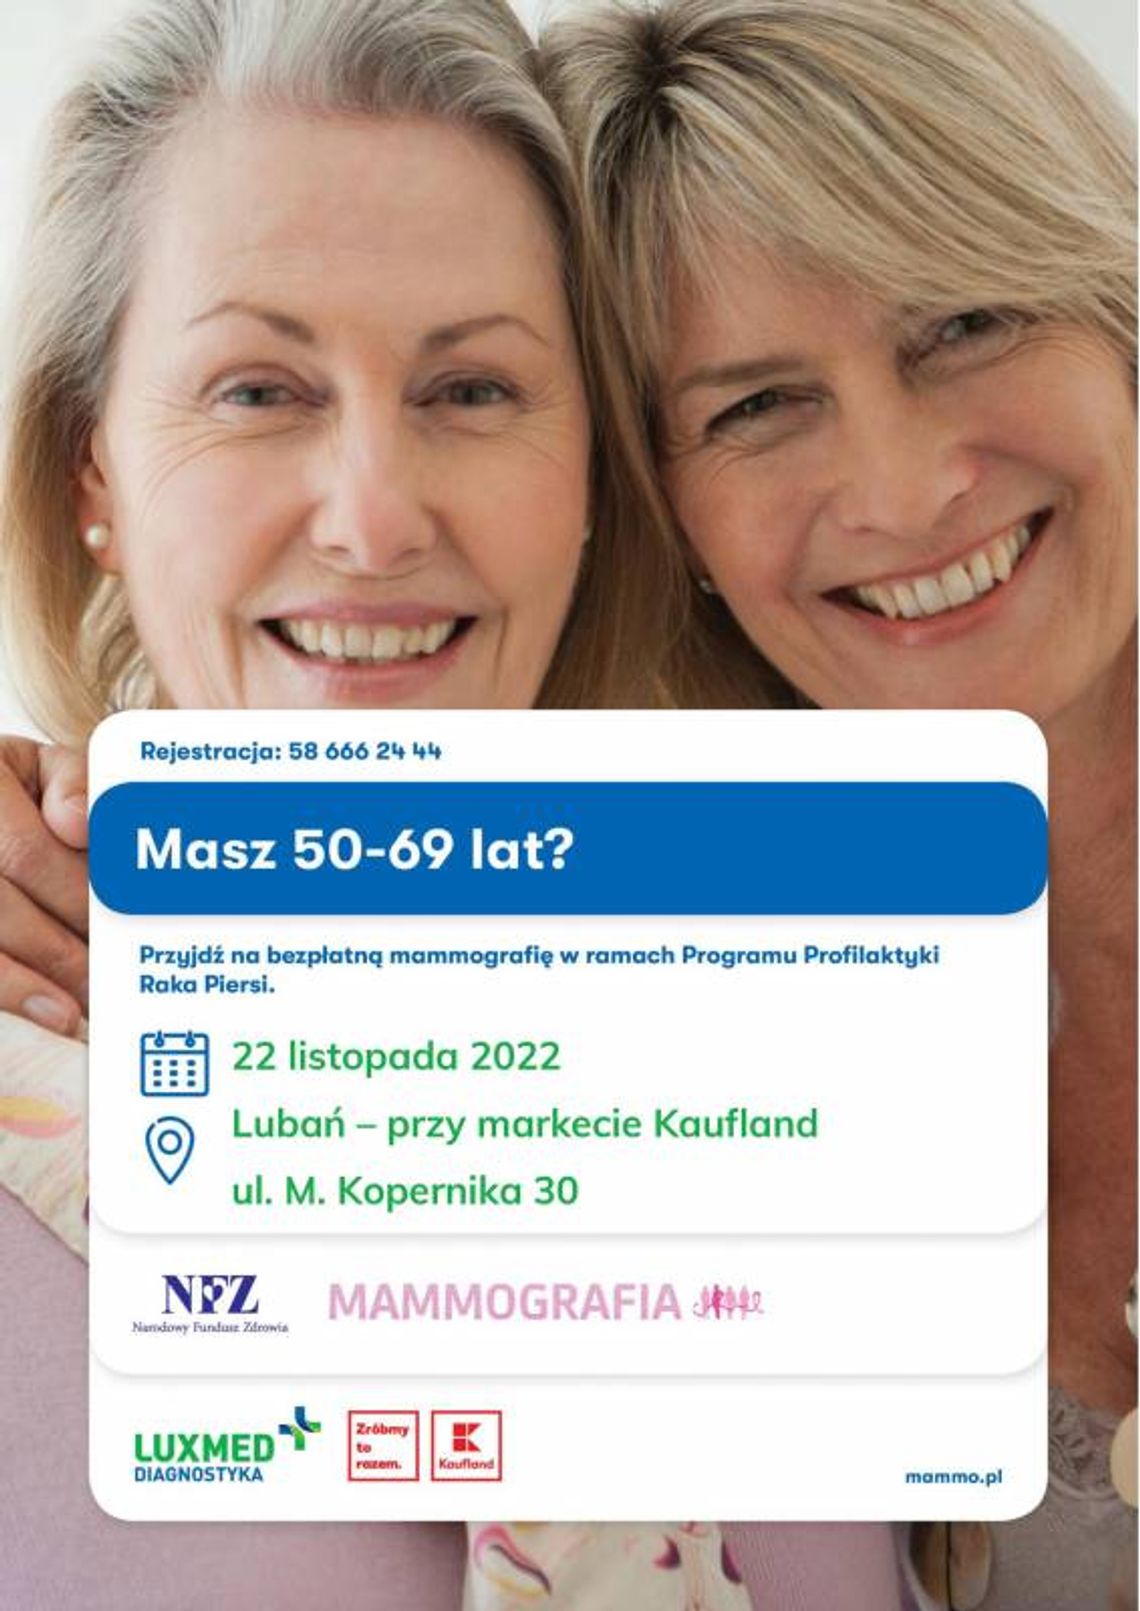 Bezpłatne badania w mobilnej pracowni mammograficznej LUX MED